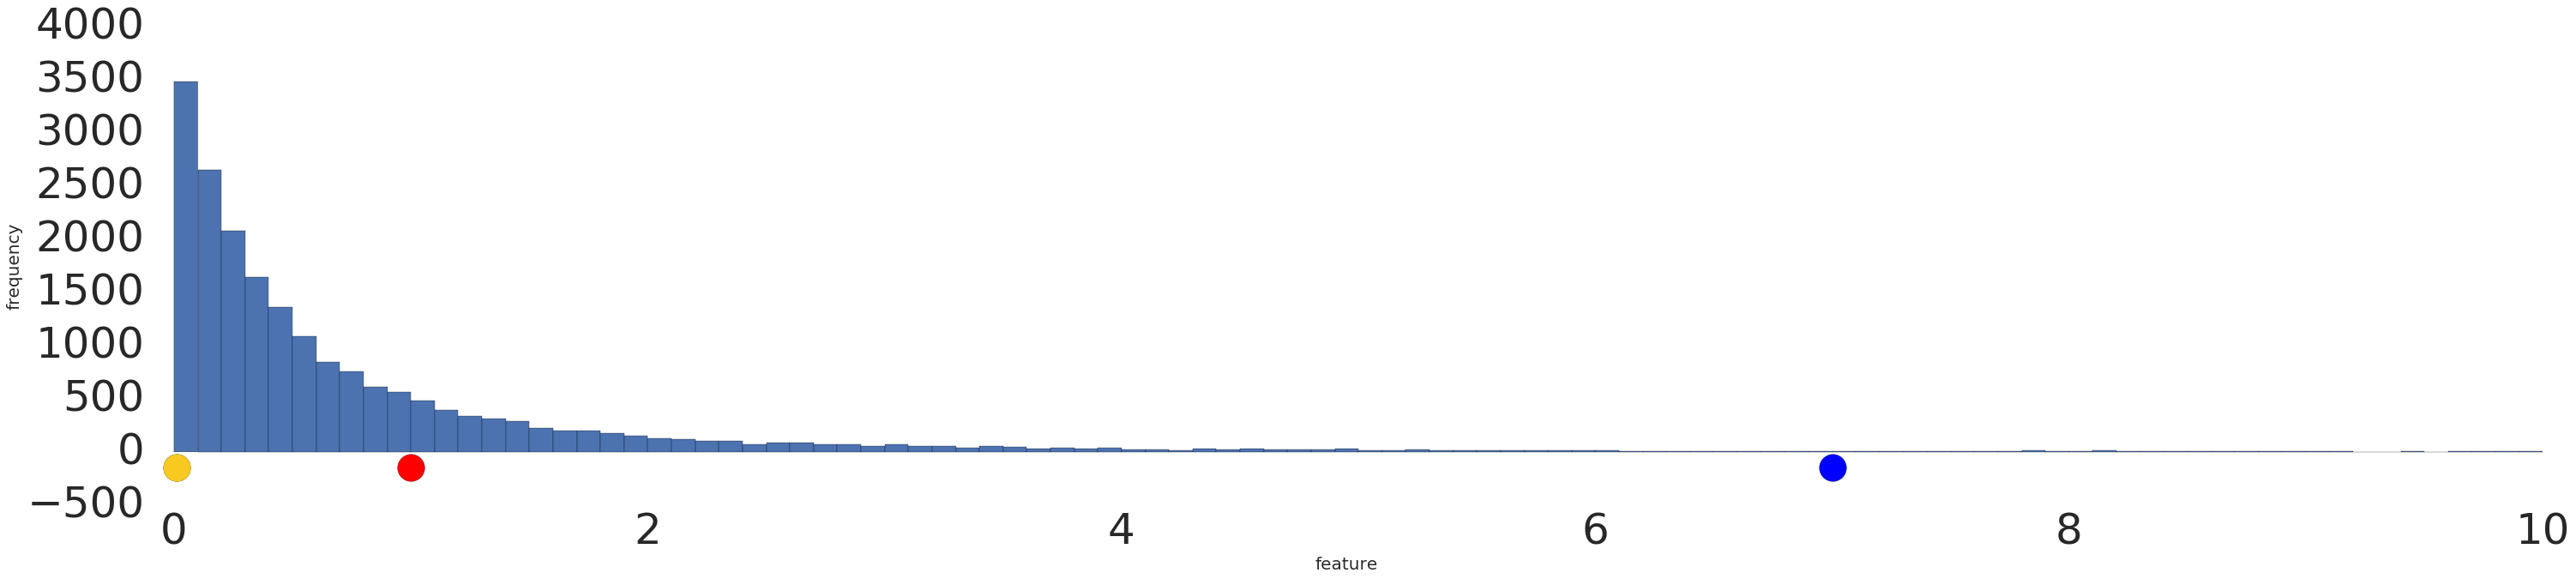 Un gráfico de barras con la mayoría de los datos en el extremo inferior